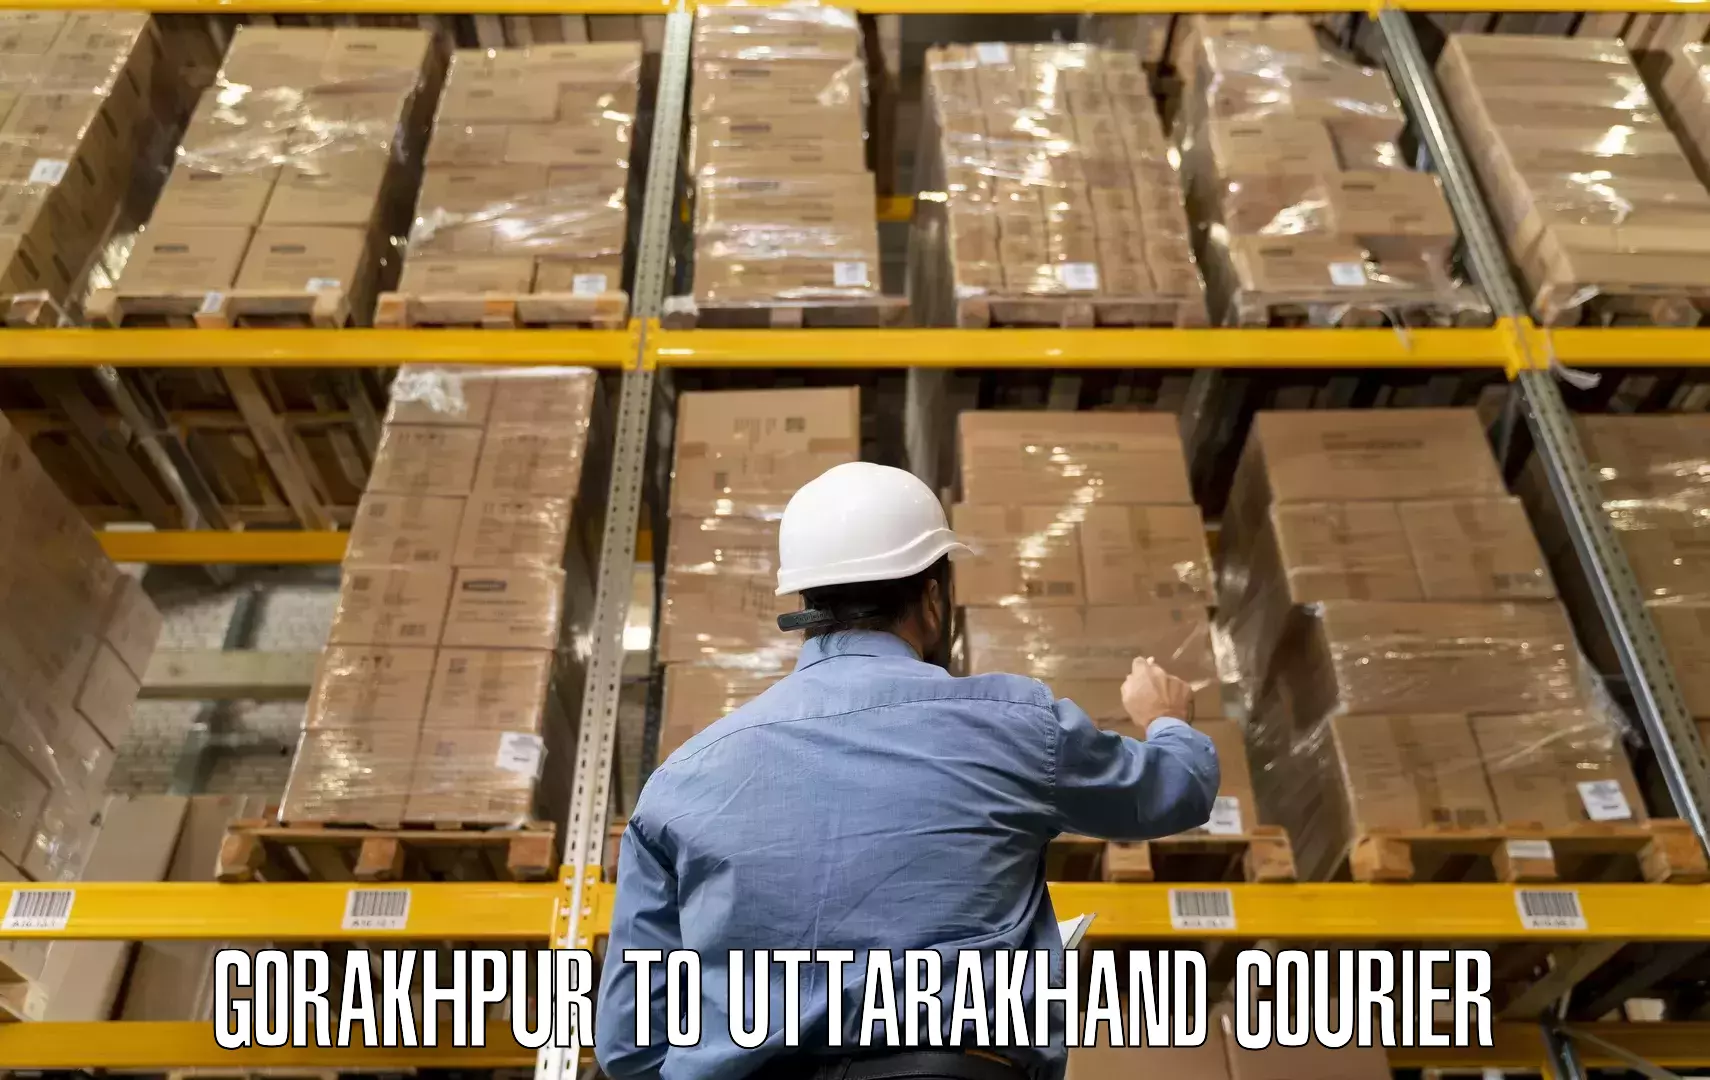 Furniture moving experts Gorakhpur to Pithoragarh